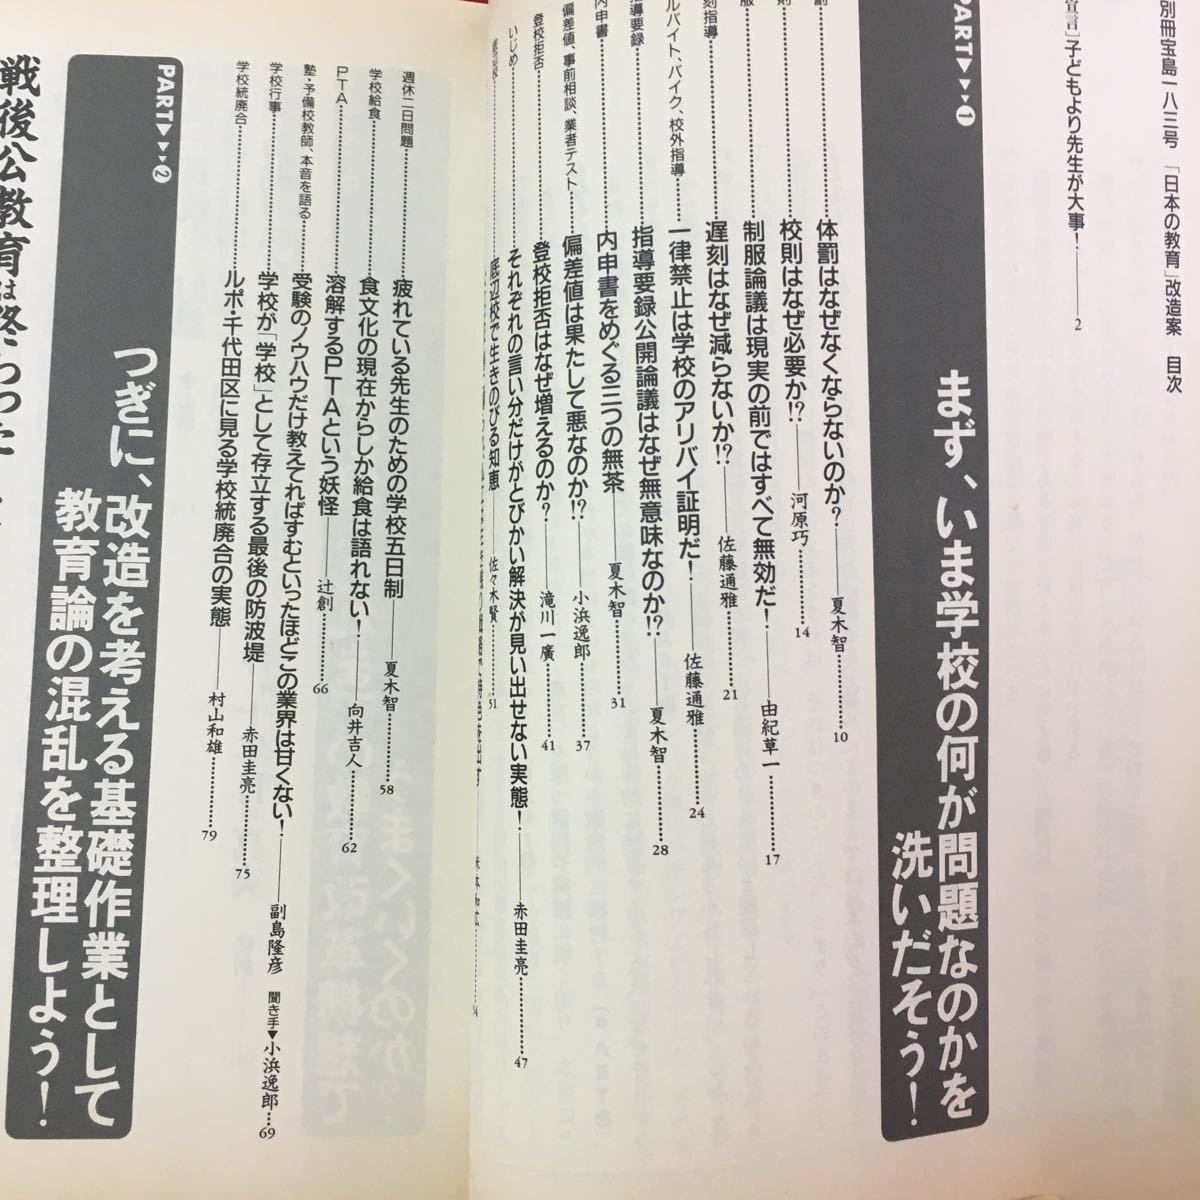 S7g-027 別冊宝島183 日本の教育改造案 こうすれば日本の学校はガラリと変わる! 1993年8月23日発行 まず、いま学校の何が問題なのかを‥_画像5